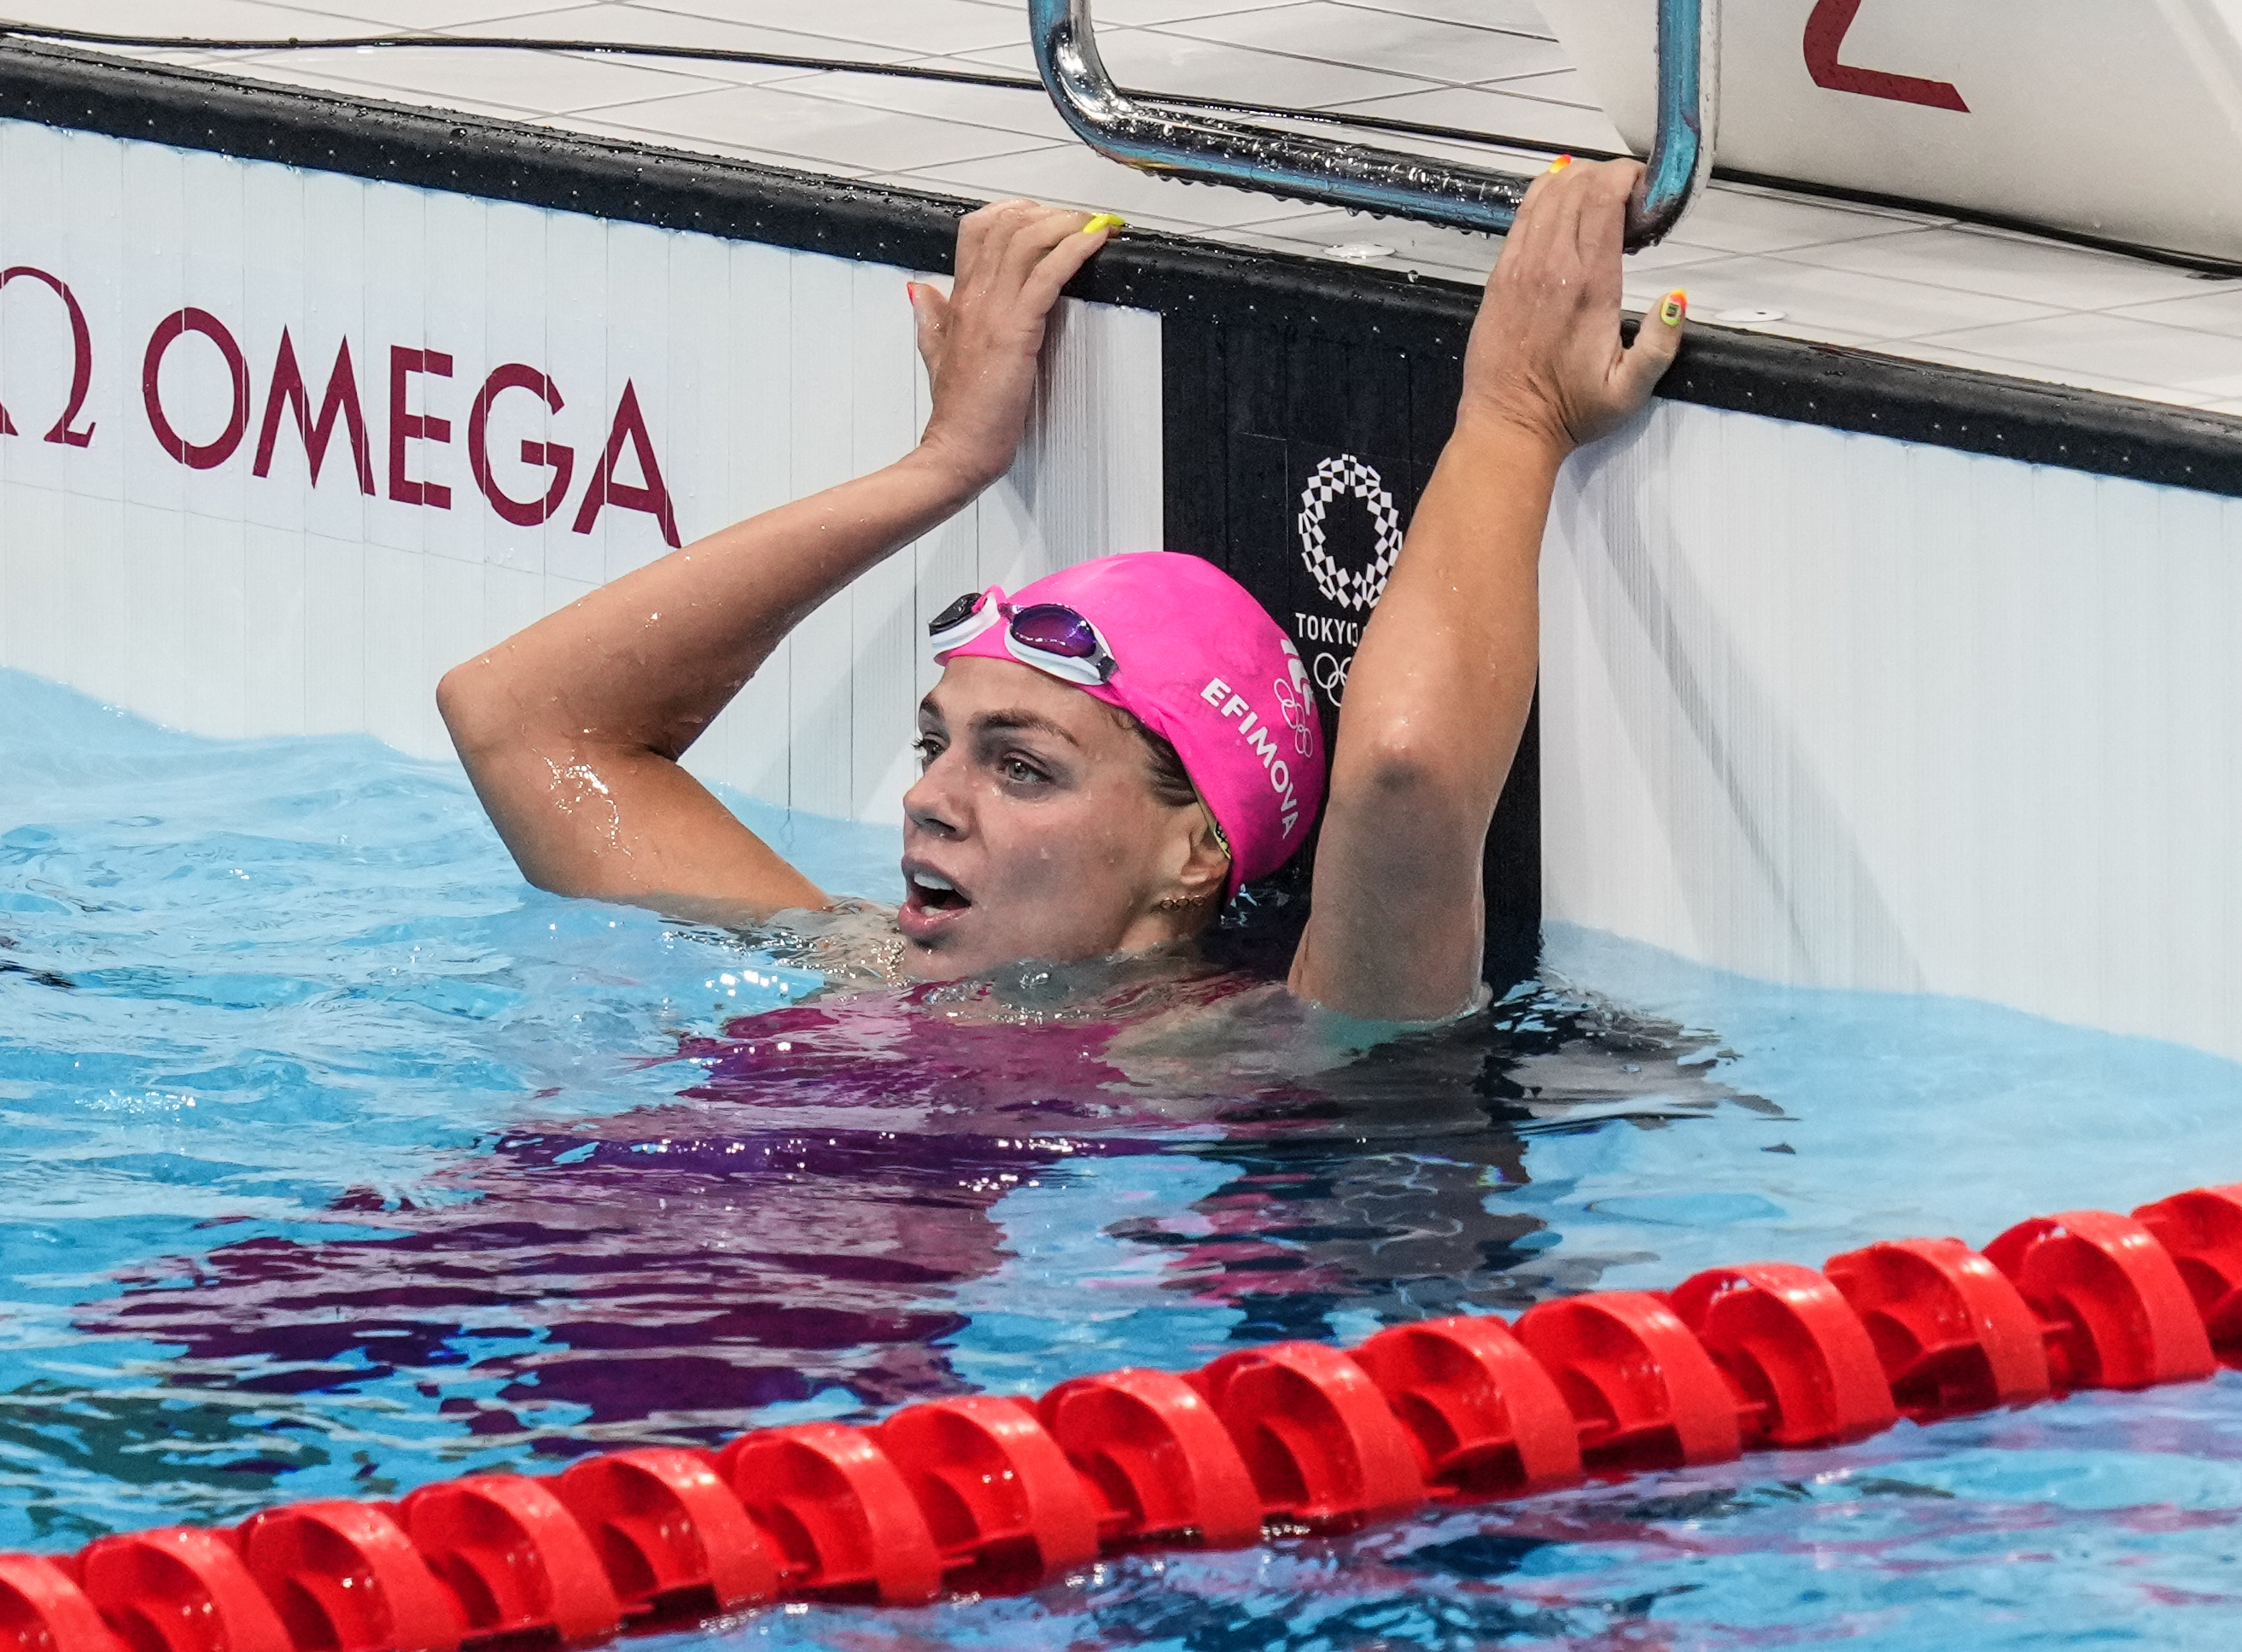 Пловчиха Ефимова получила нейтральный статус, но на Олимпиаду может не попасть